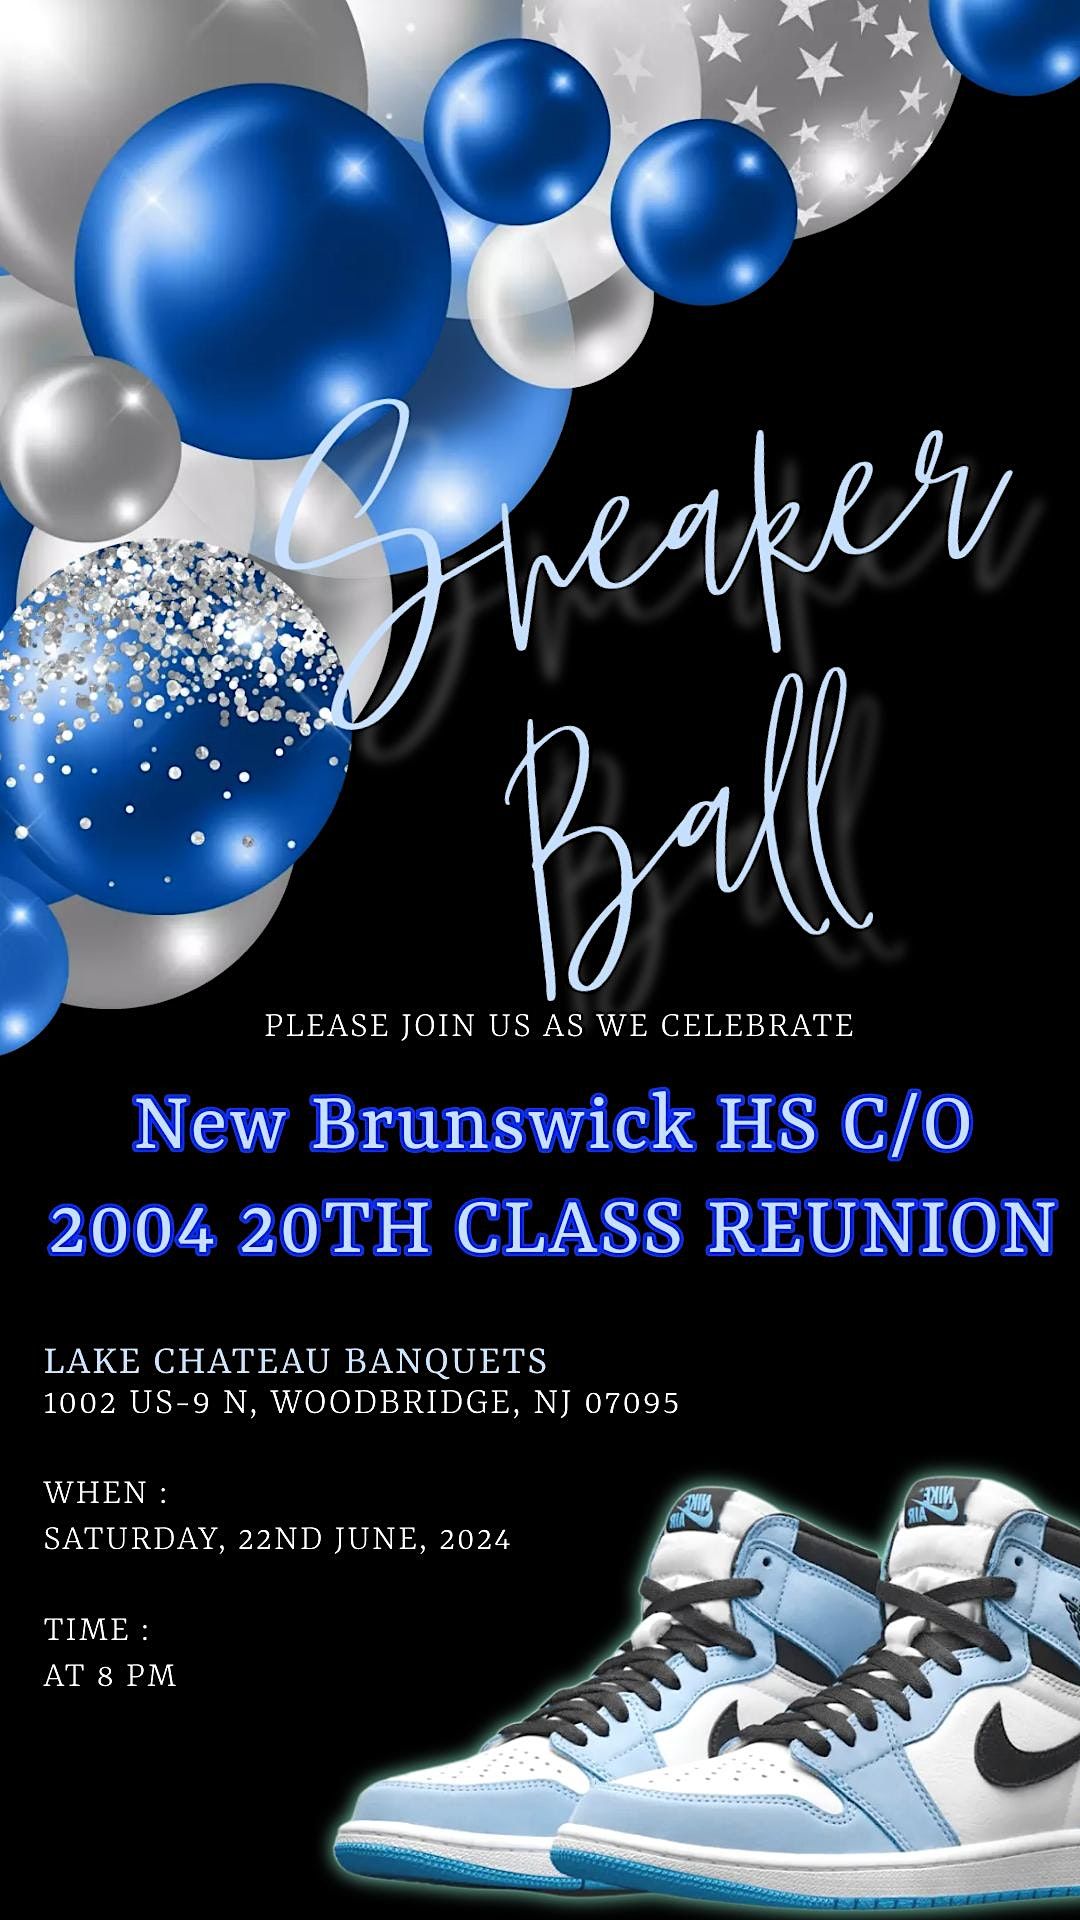 NEW BRUNSWICK HS C\/O 2004 REUNION - SNEAKER BALL